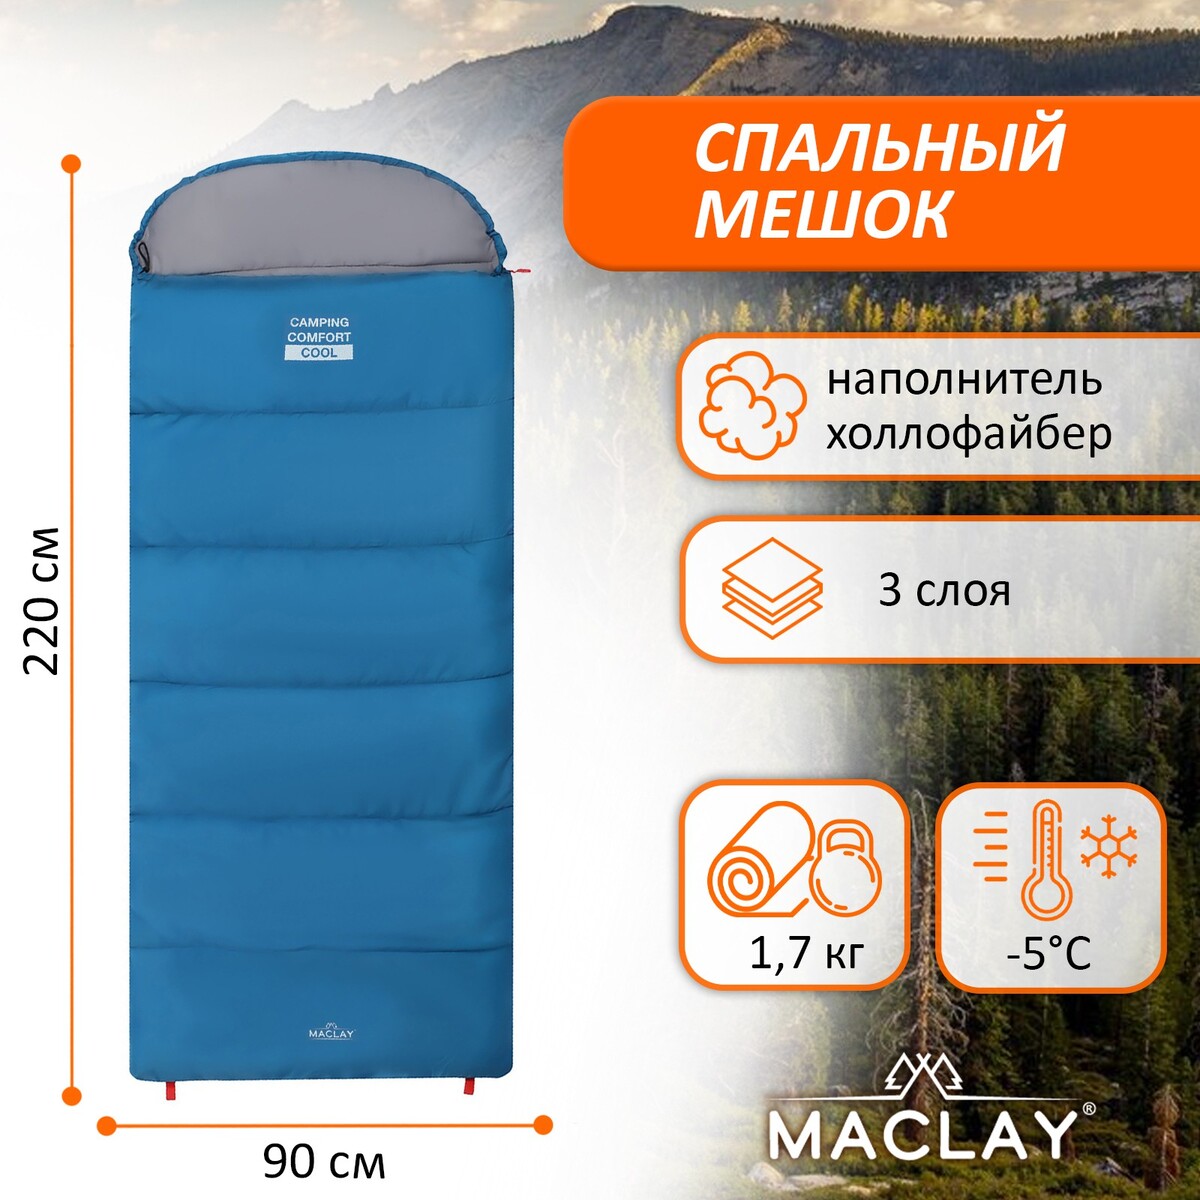 Спальный мешок maclay camping comfort cool, 3-слойный, левый, 220х90 см, -5/+10°с спальный мешок maclay camping comfort cool 3 слойный левый 220х90 см 5 10°с